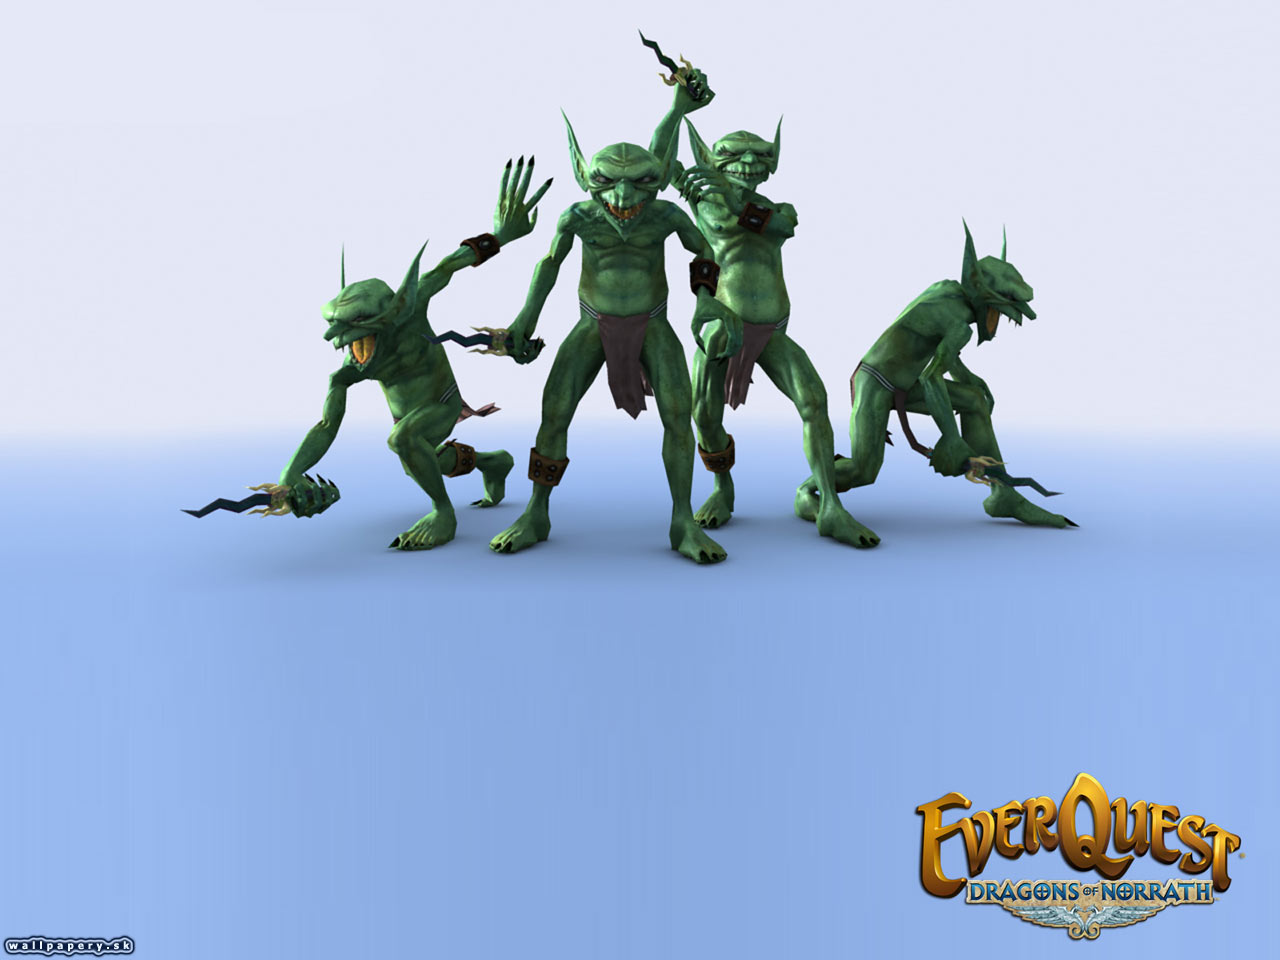 EverQuest: Dragons of Norrath - wallpaper 4